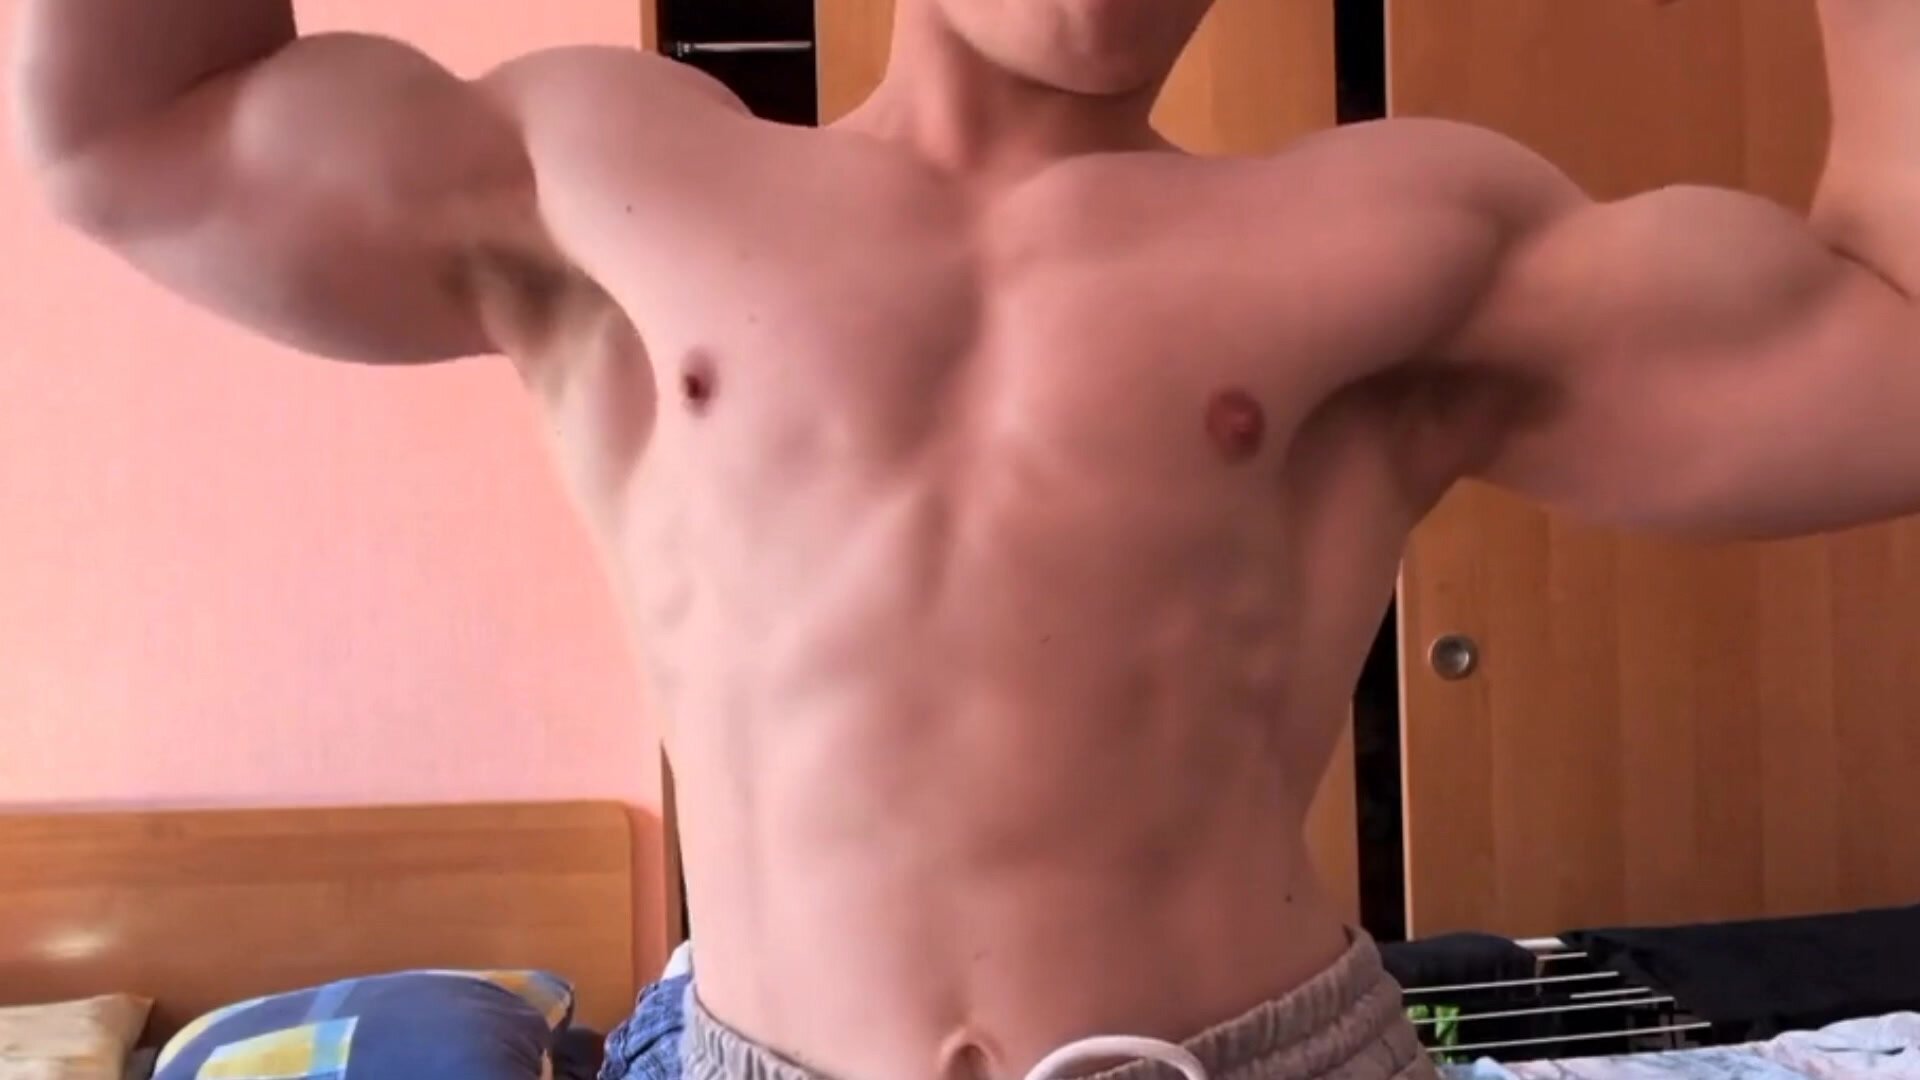 Slavic Muscles